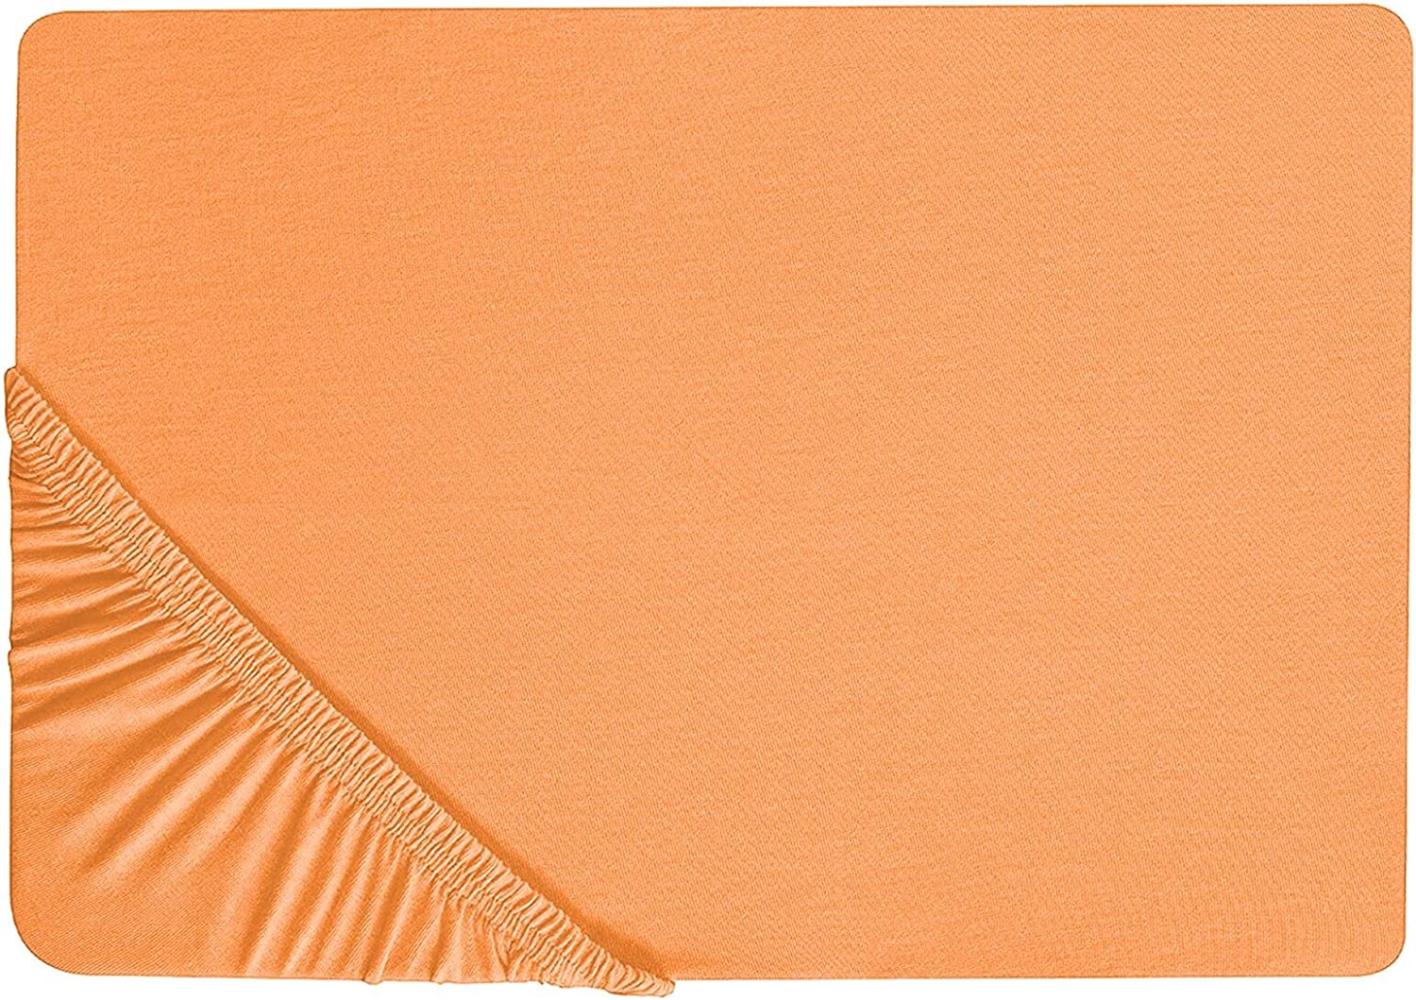 Spannbettlaken Baumwolle orange 200 x 200 cm JANBU Bild 1